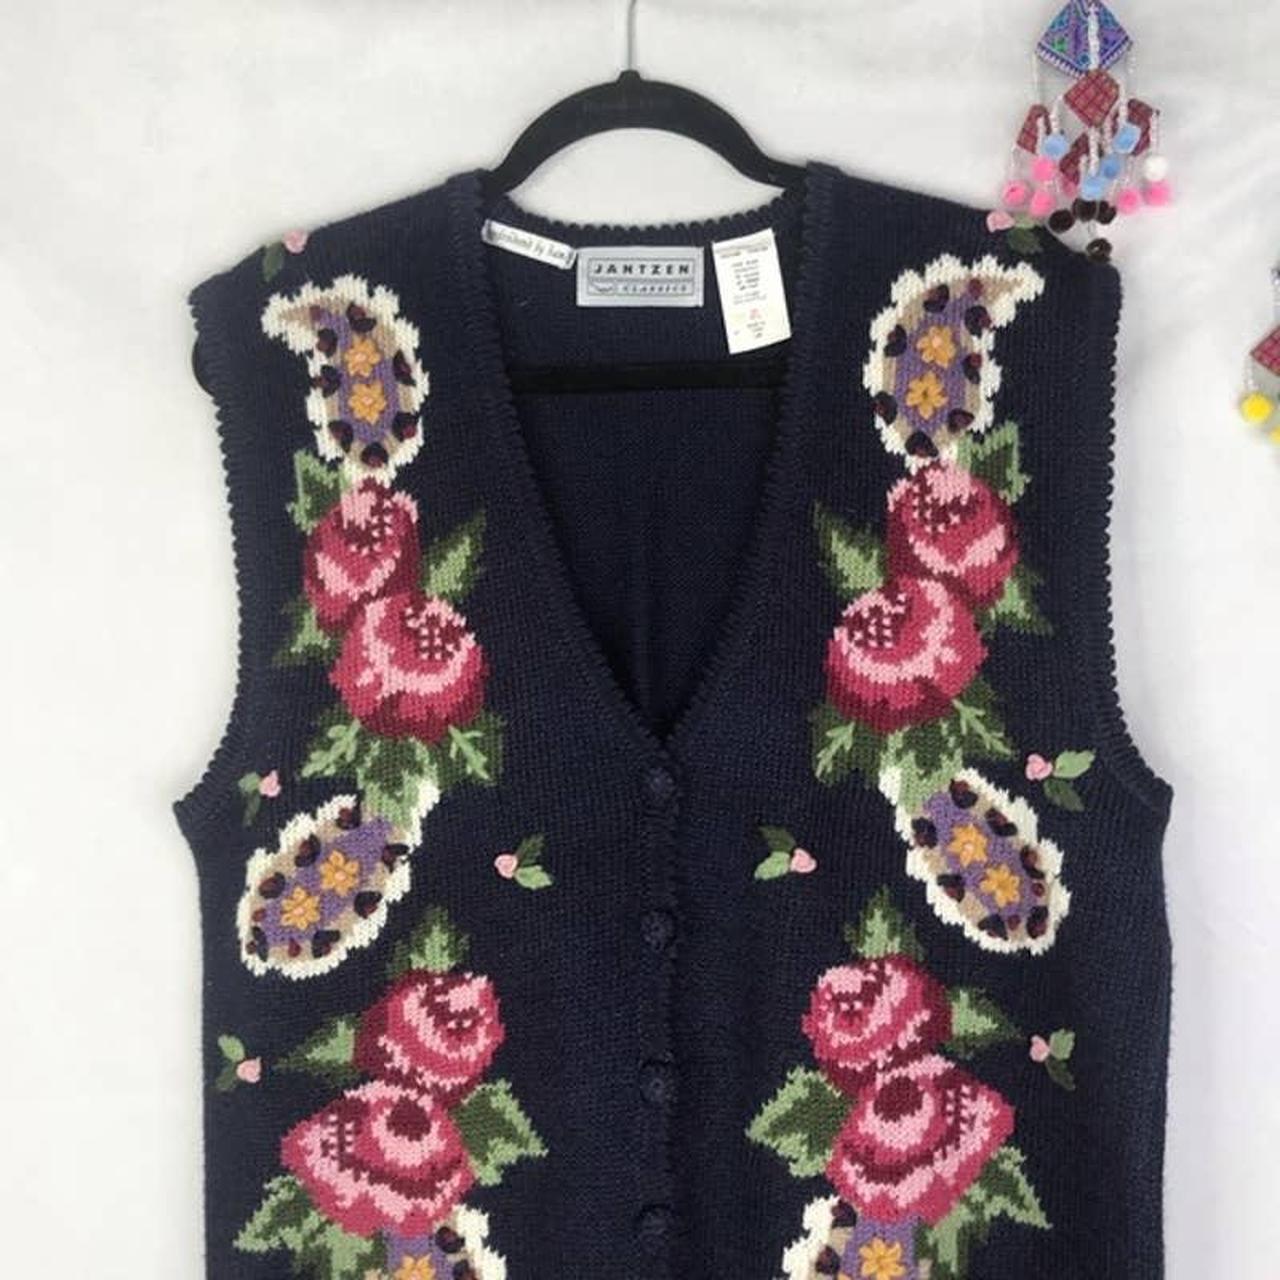 Vintage Jantzen floral Cottagecore embroidery granny... - Depop